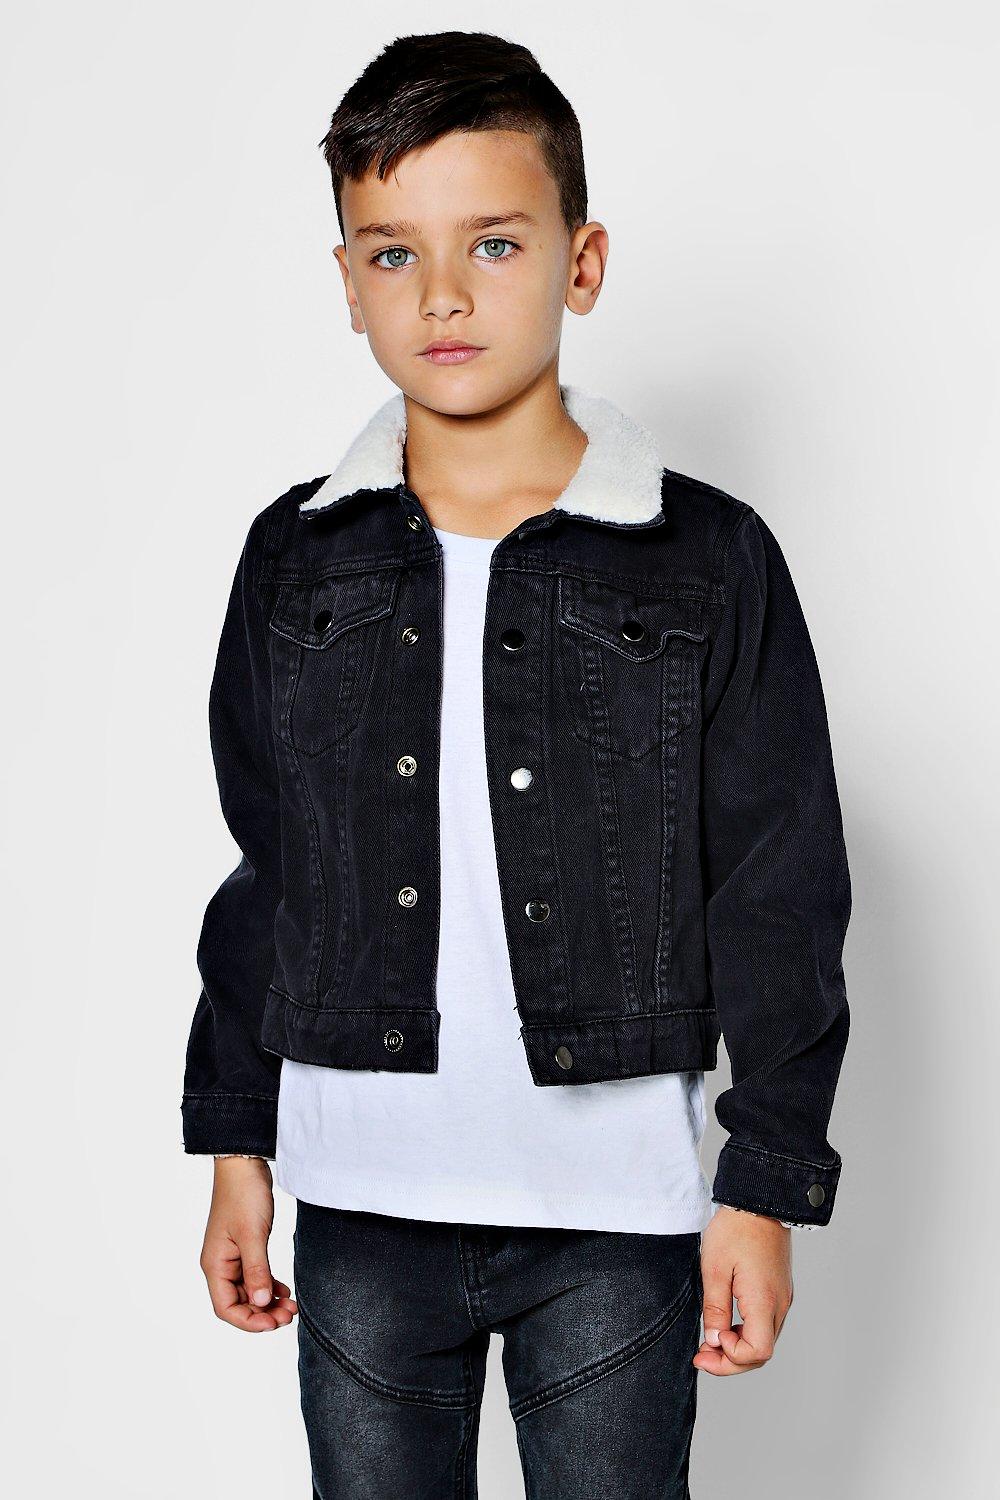 boys black jean jacket